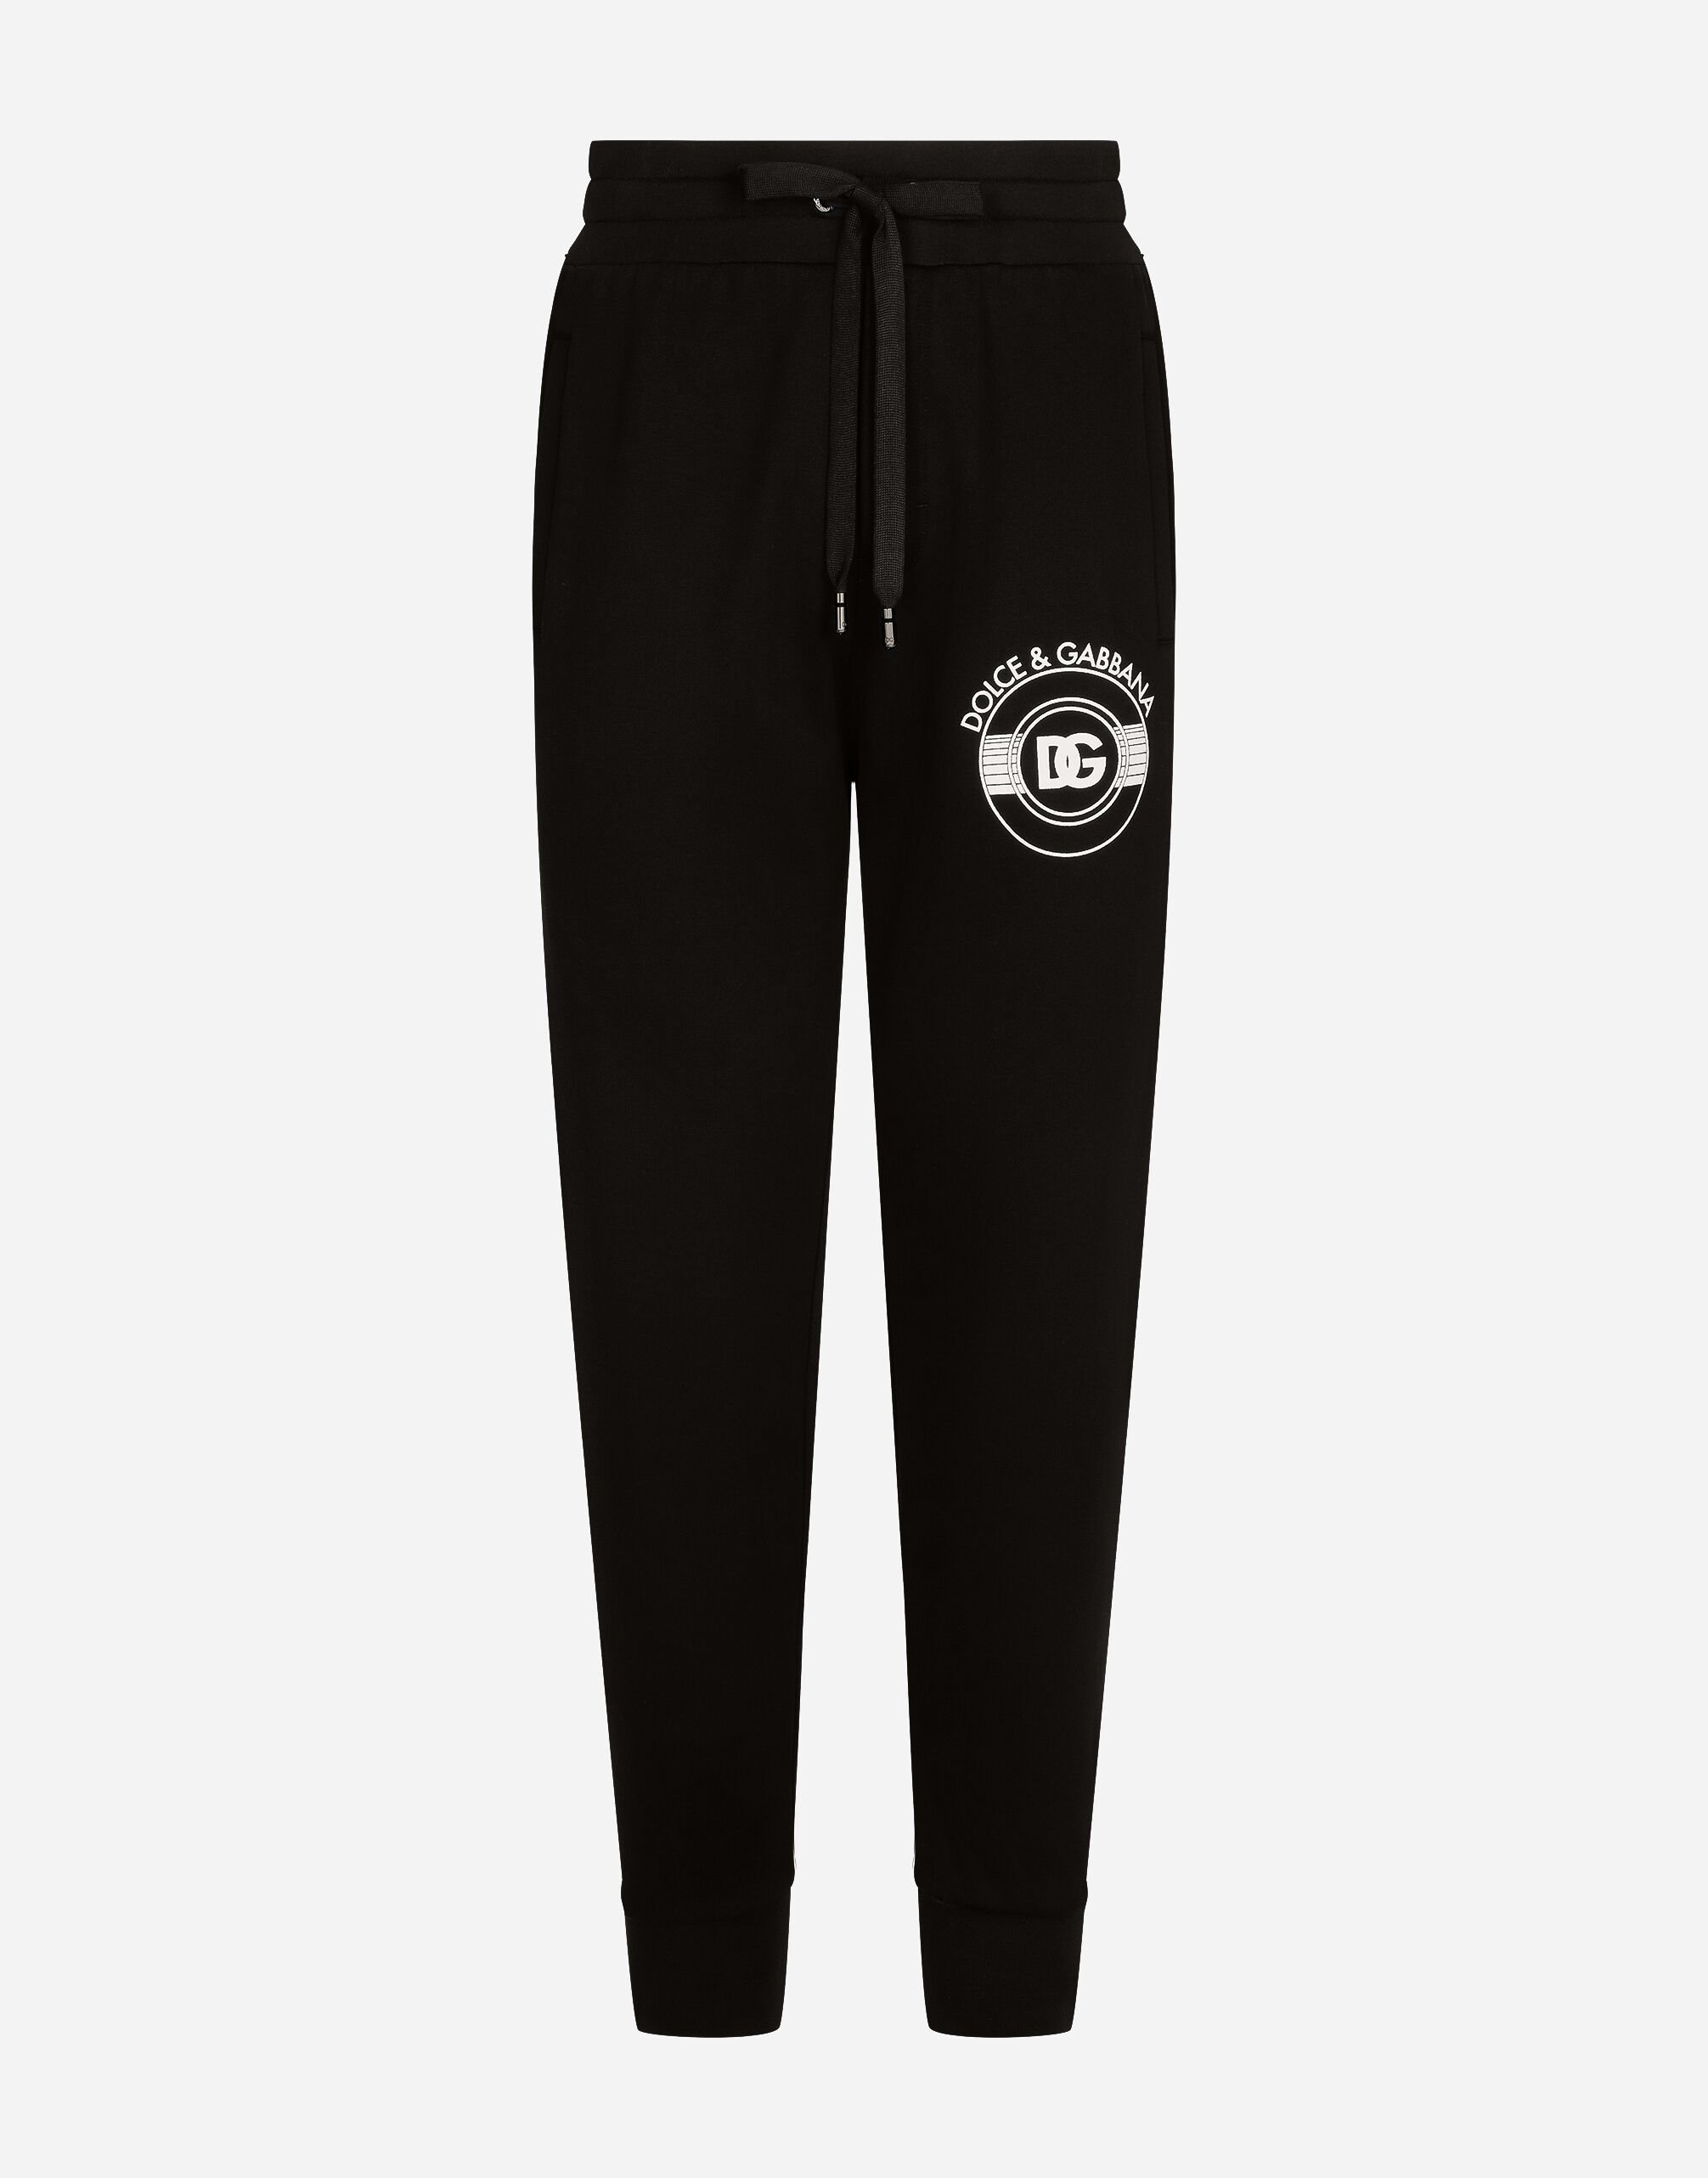 Dolce & Gabbana Jersey jogging pants with DG logo print Print GW0MATHS5RU